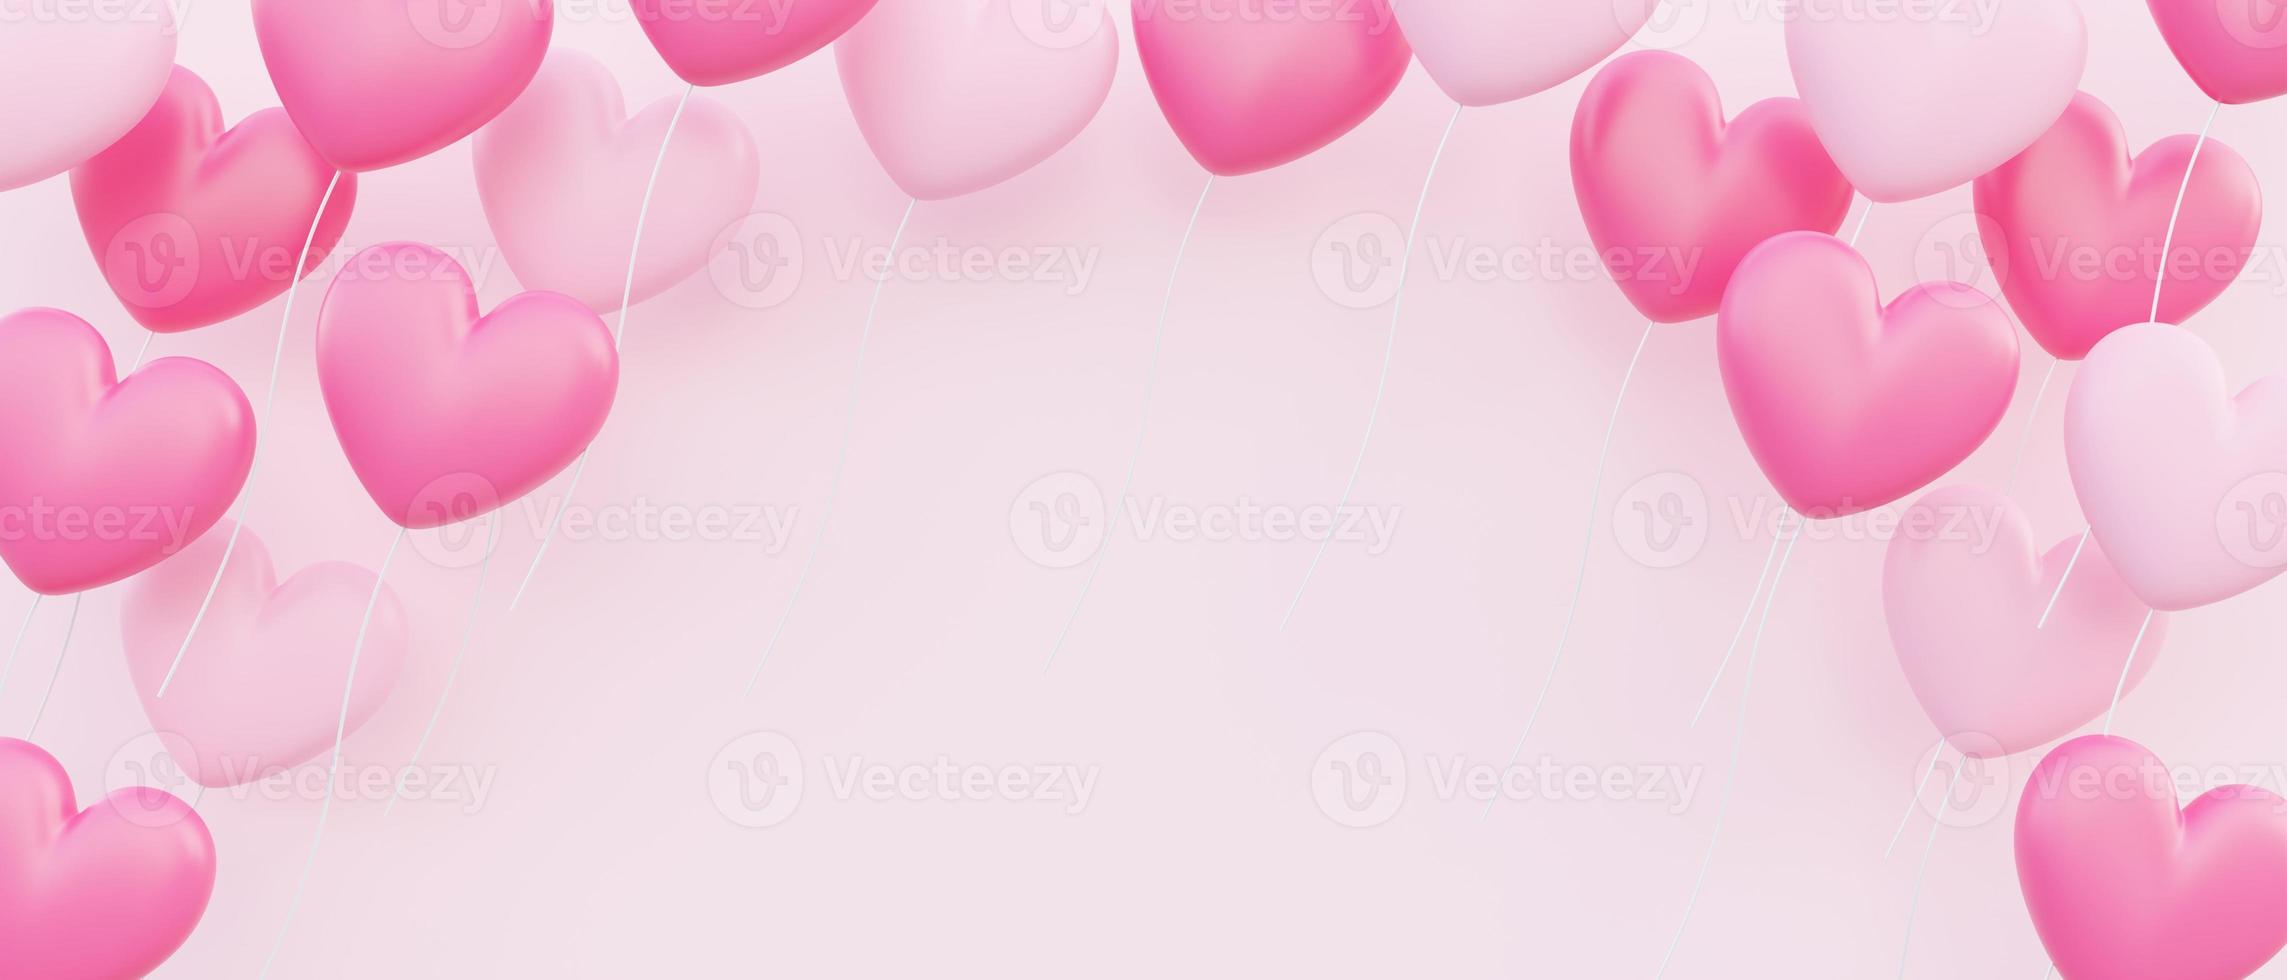 San Valentino sfondo banner, illustrazione 3d di palloncini rosa a forma di cuore che galleggiano sovrapposti foto